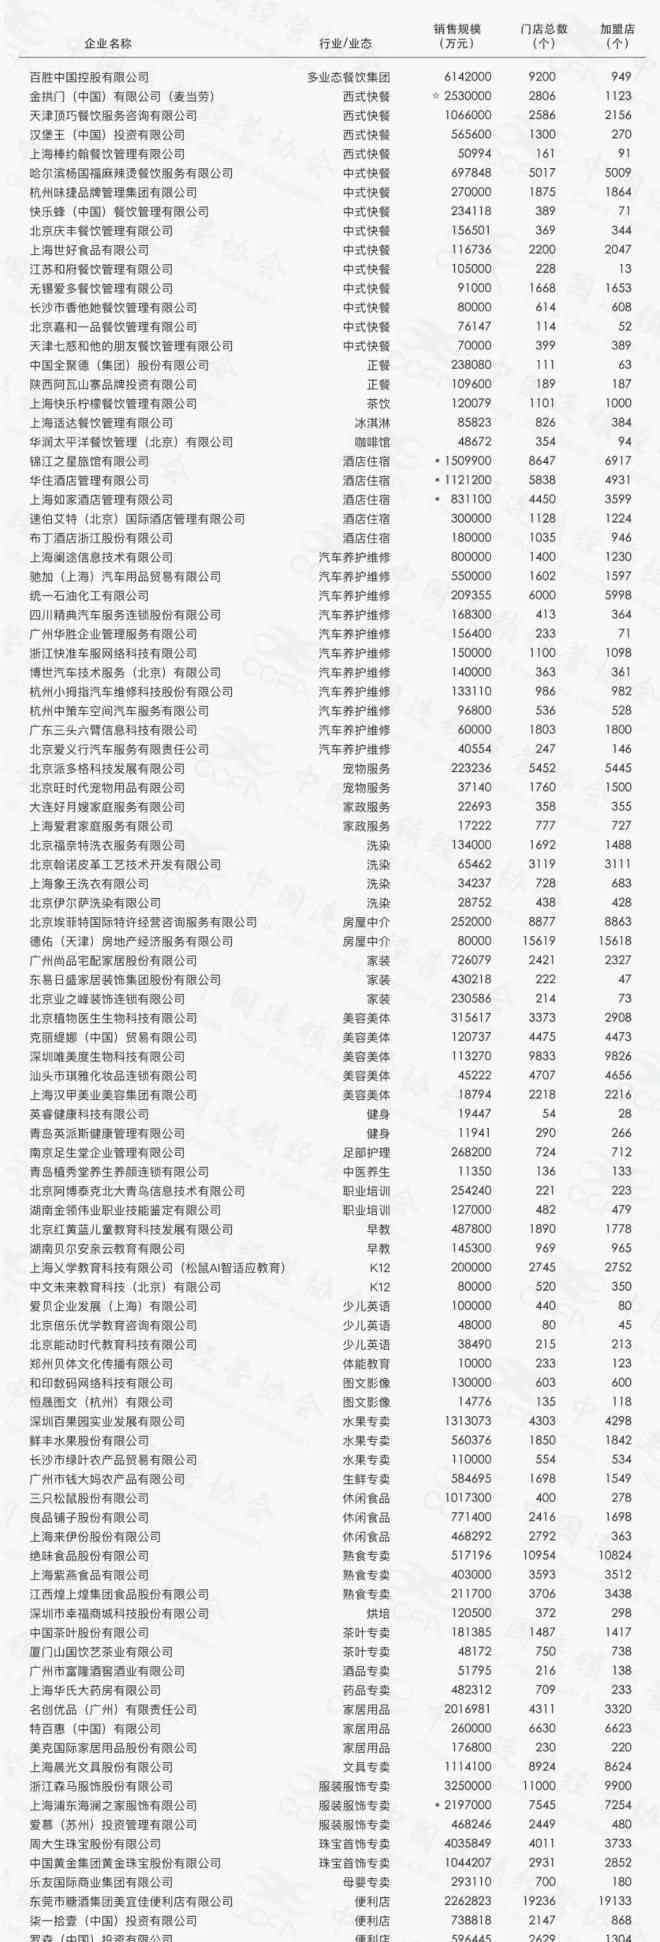 特许加盟店 2019中国特许连锁百强榜单发布